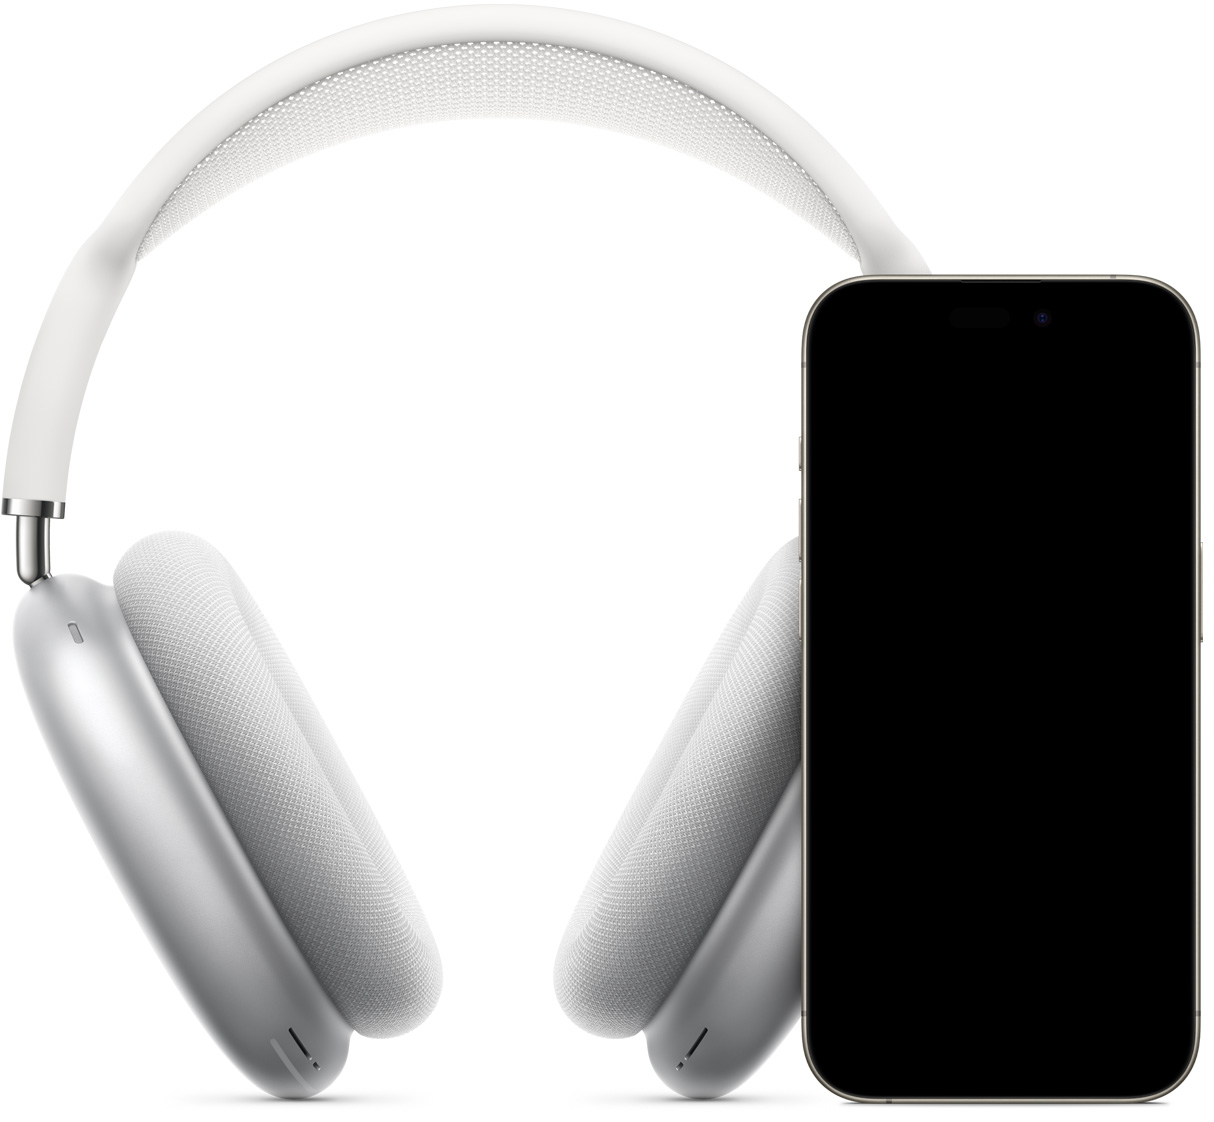 Imagen de unos AirPods Max en plata colocados detrás de un iPhone que muestra la pantalla de configuración instantánea con el botón para enlazar ambos dispositivos.